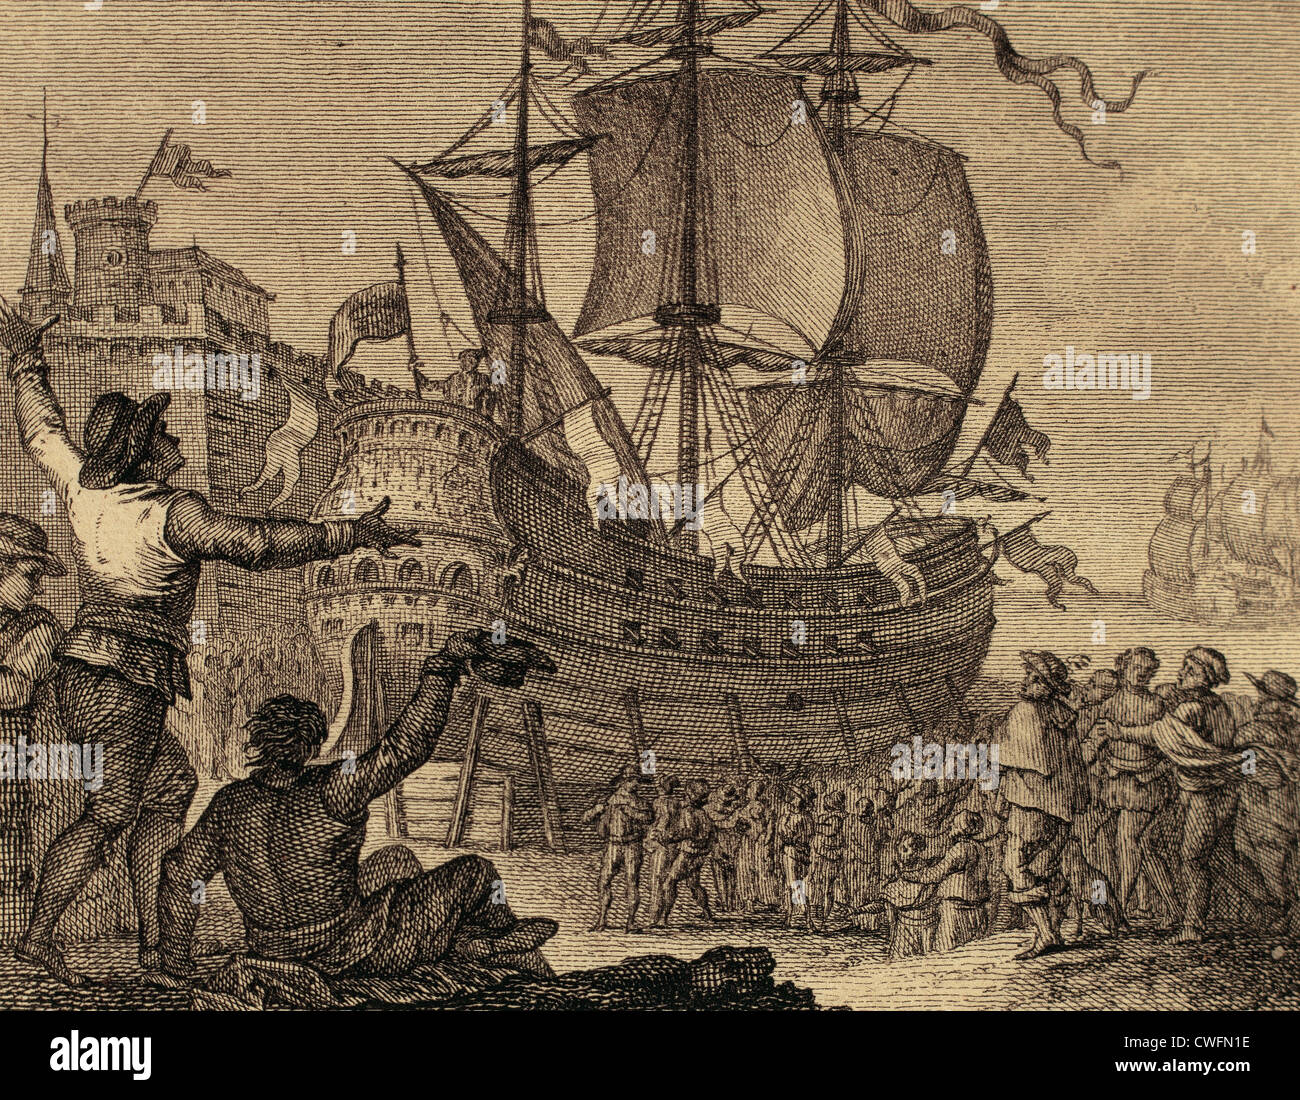 Das Schiff stationiert Victoria in Sevilla, Spanien, auf der ganzen Welt gewesen. Kupferstich, 1807. Stockfoto